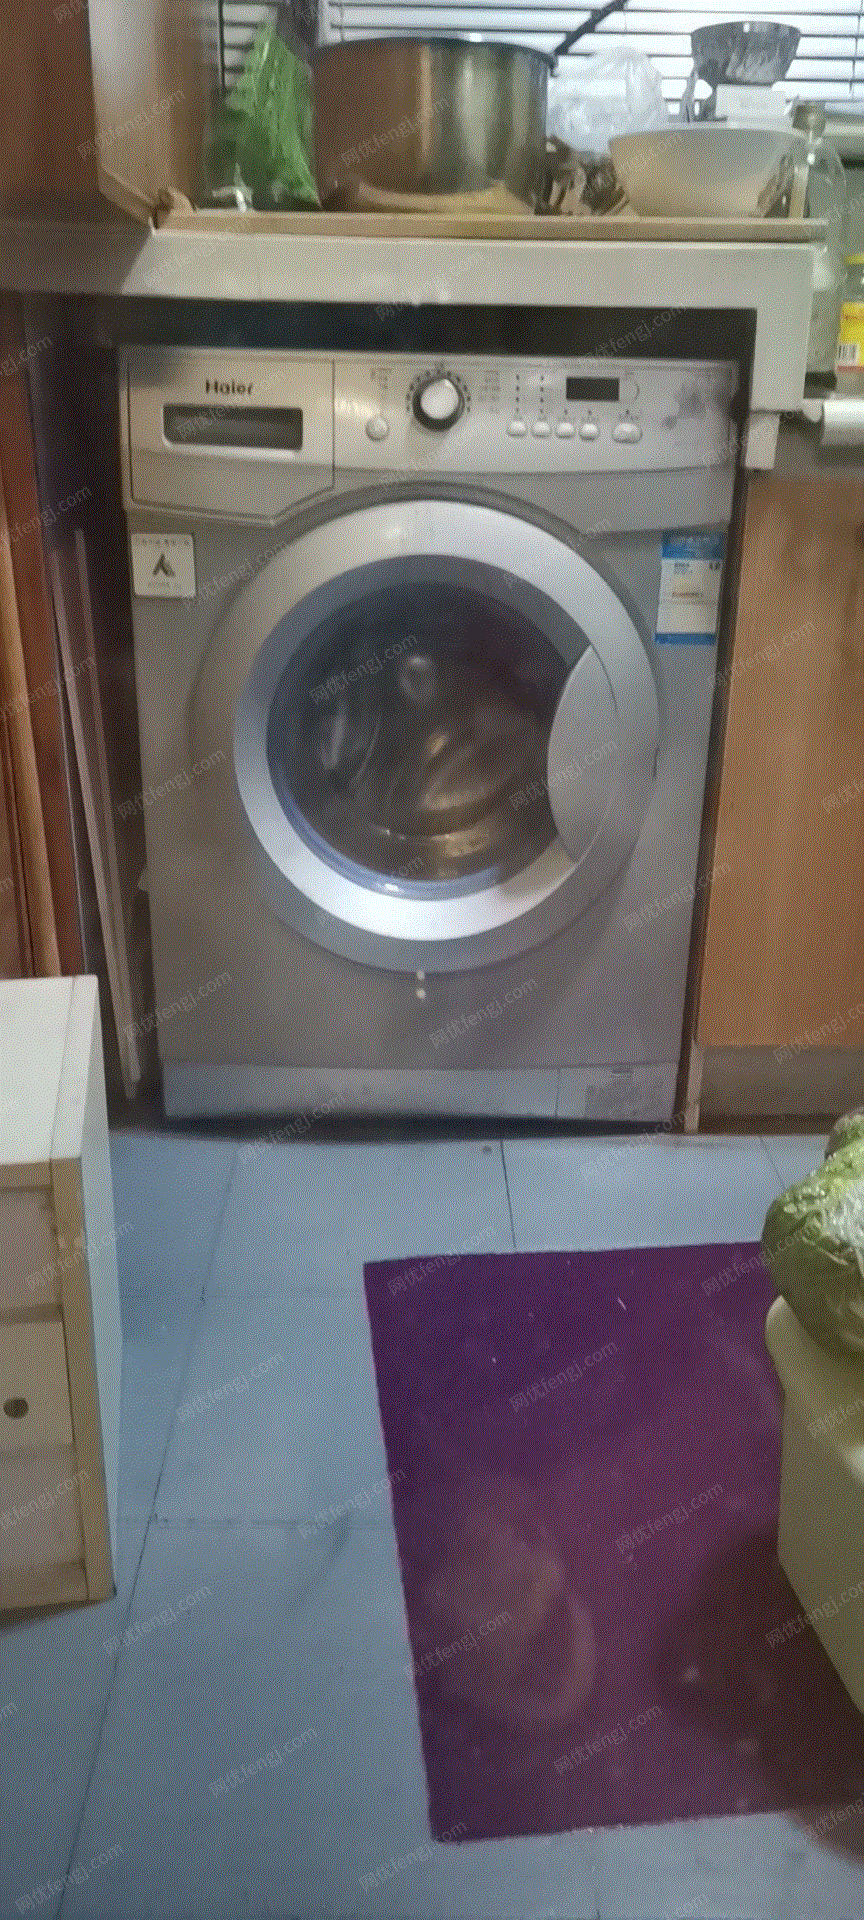 九成新旧洗衣机出售